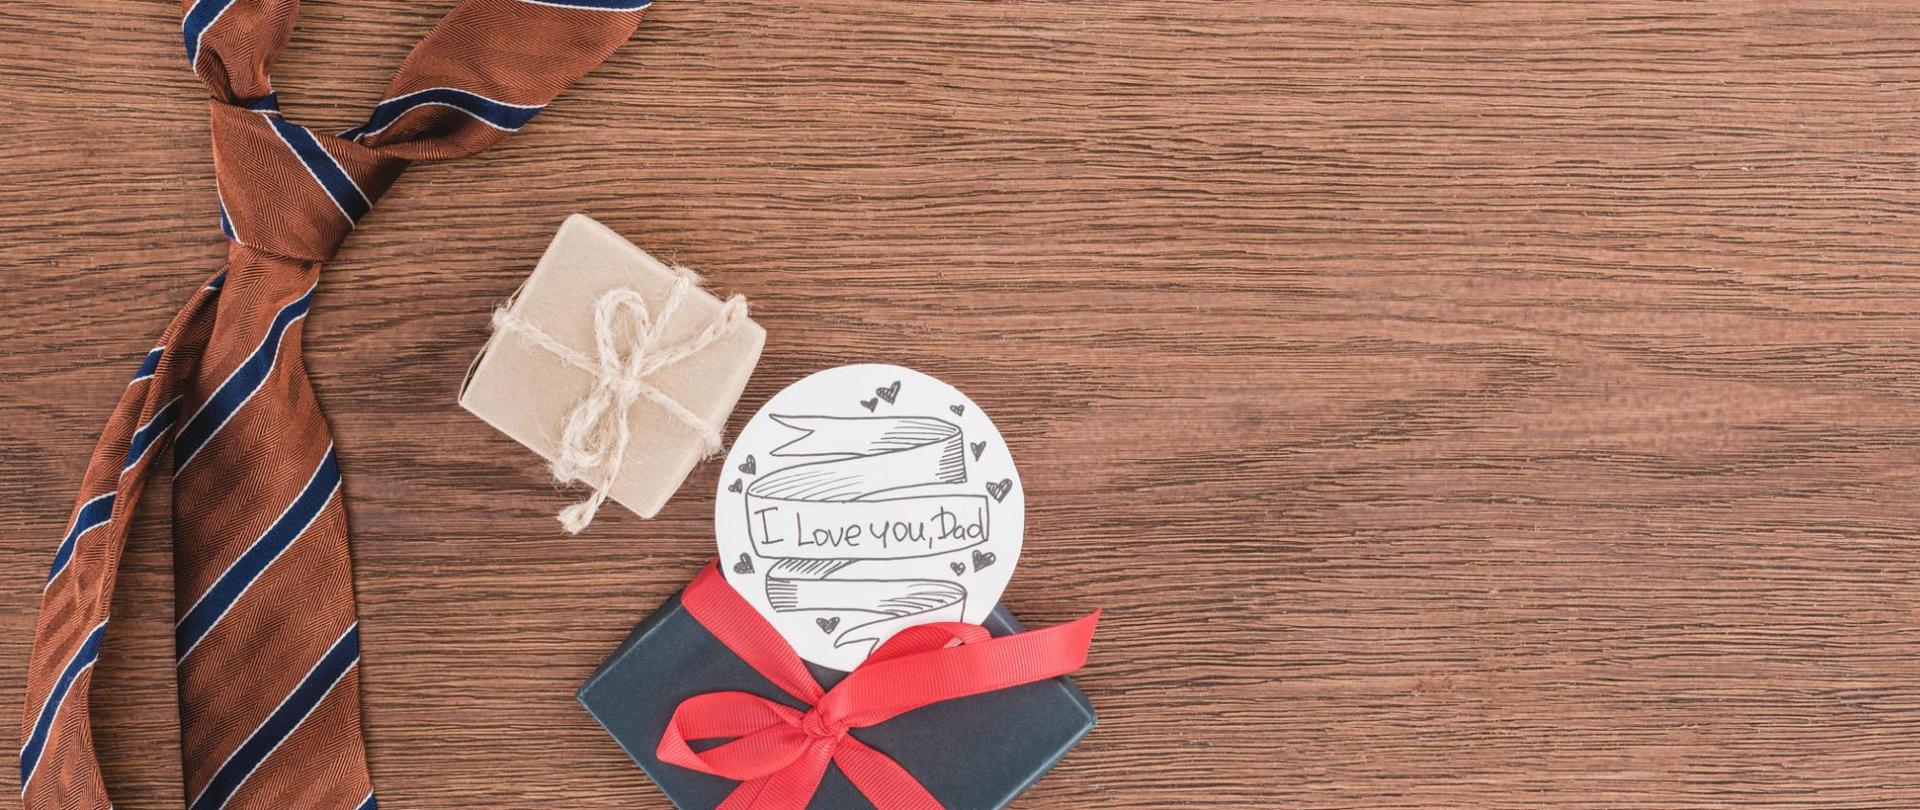 Na zdjęciu na drewnianym blacie jest krawat, dwa pudełka prezentowe oraz okrągła plakietka z napisem "I love you Dad".